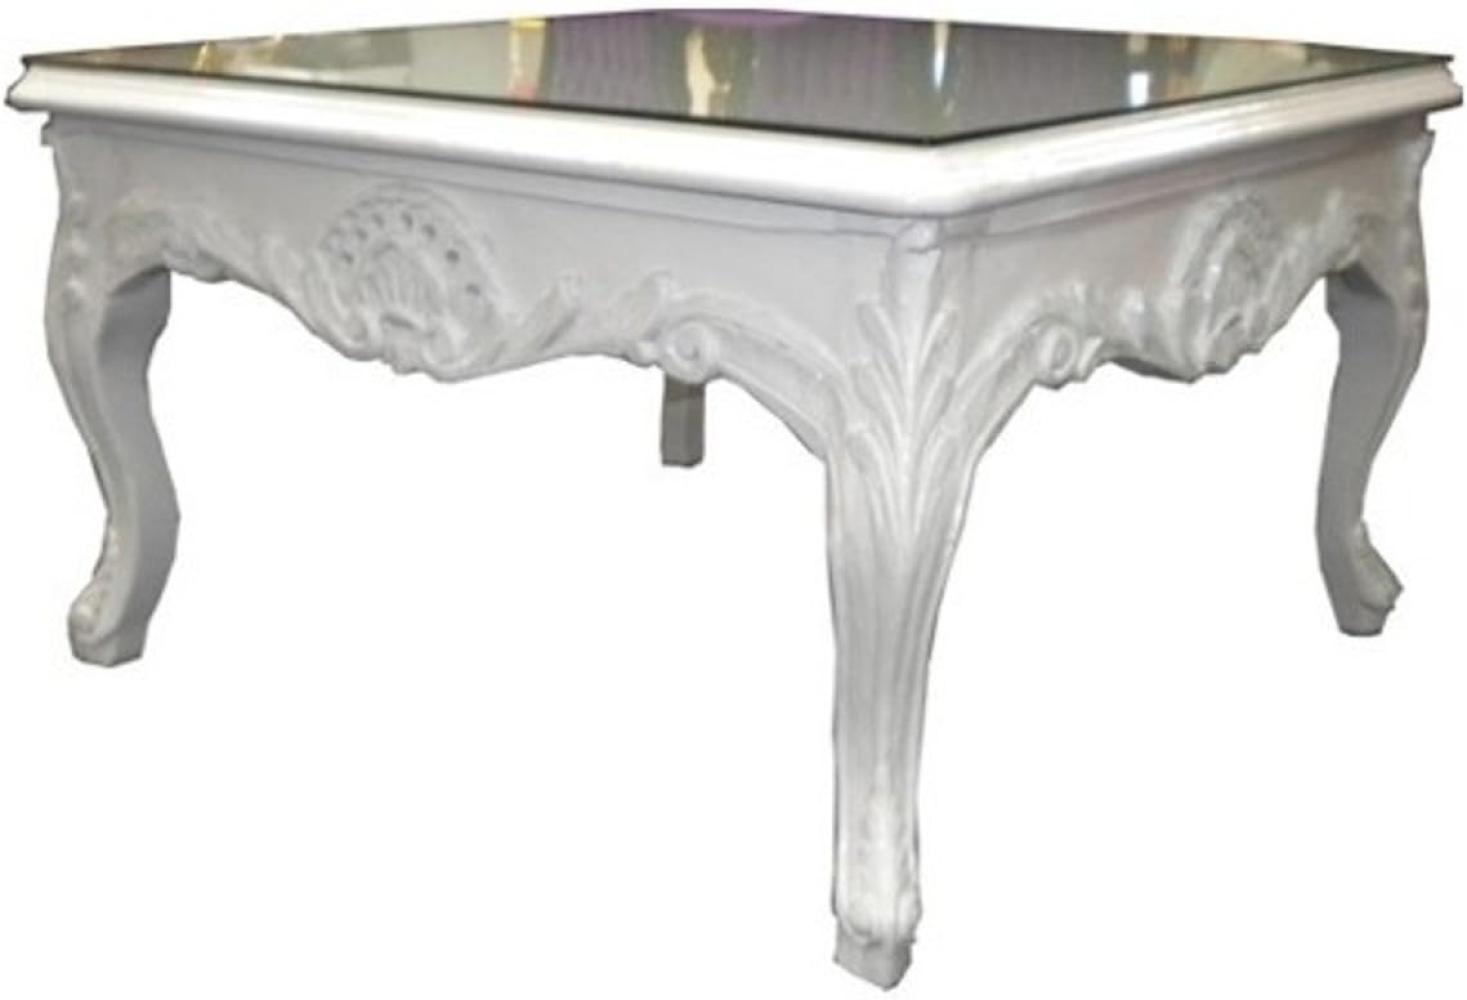 Casa Padrino Barock Couchtisch Weiß 80 x 80 cm - Beistelltisch - Wohnzimmer Salon Tisch Bild 1